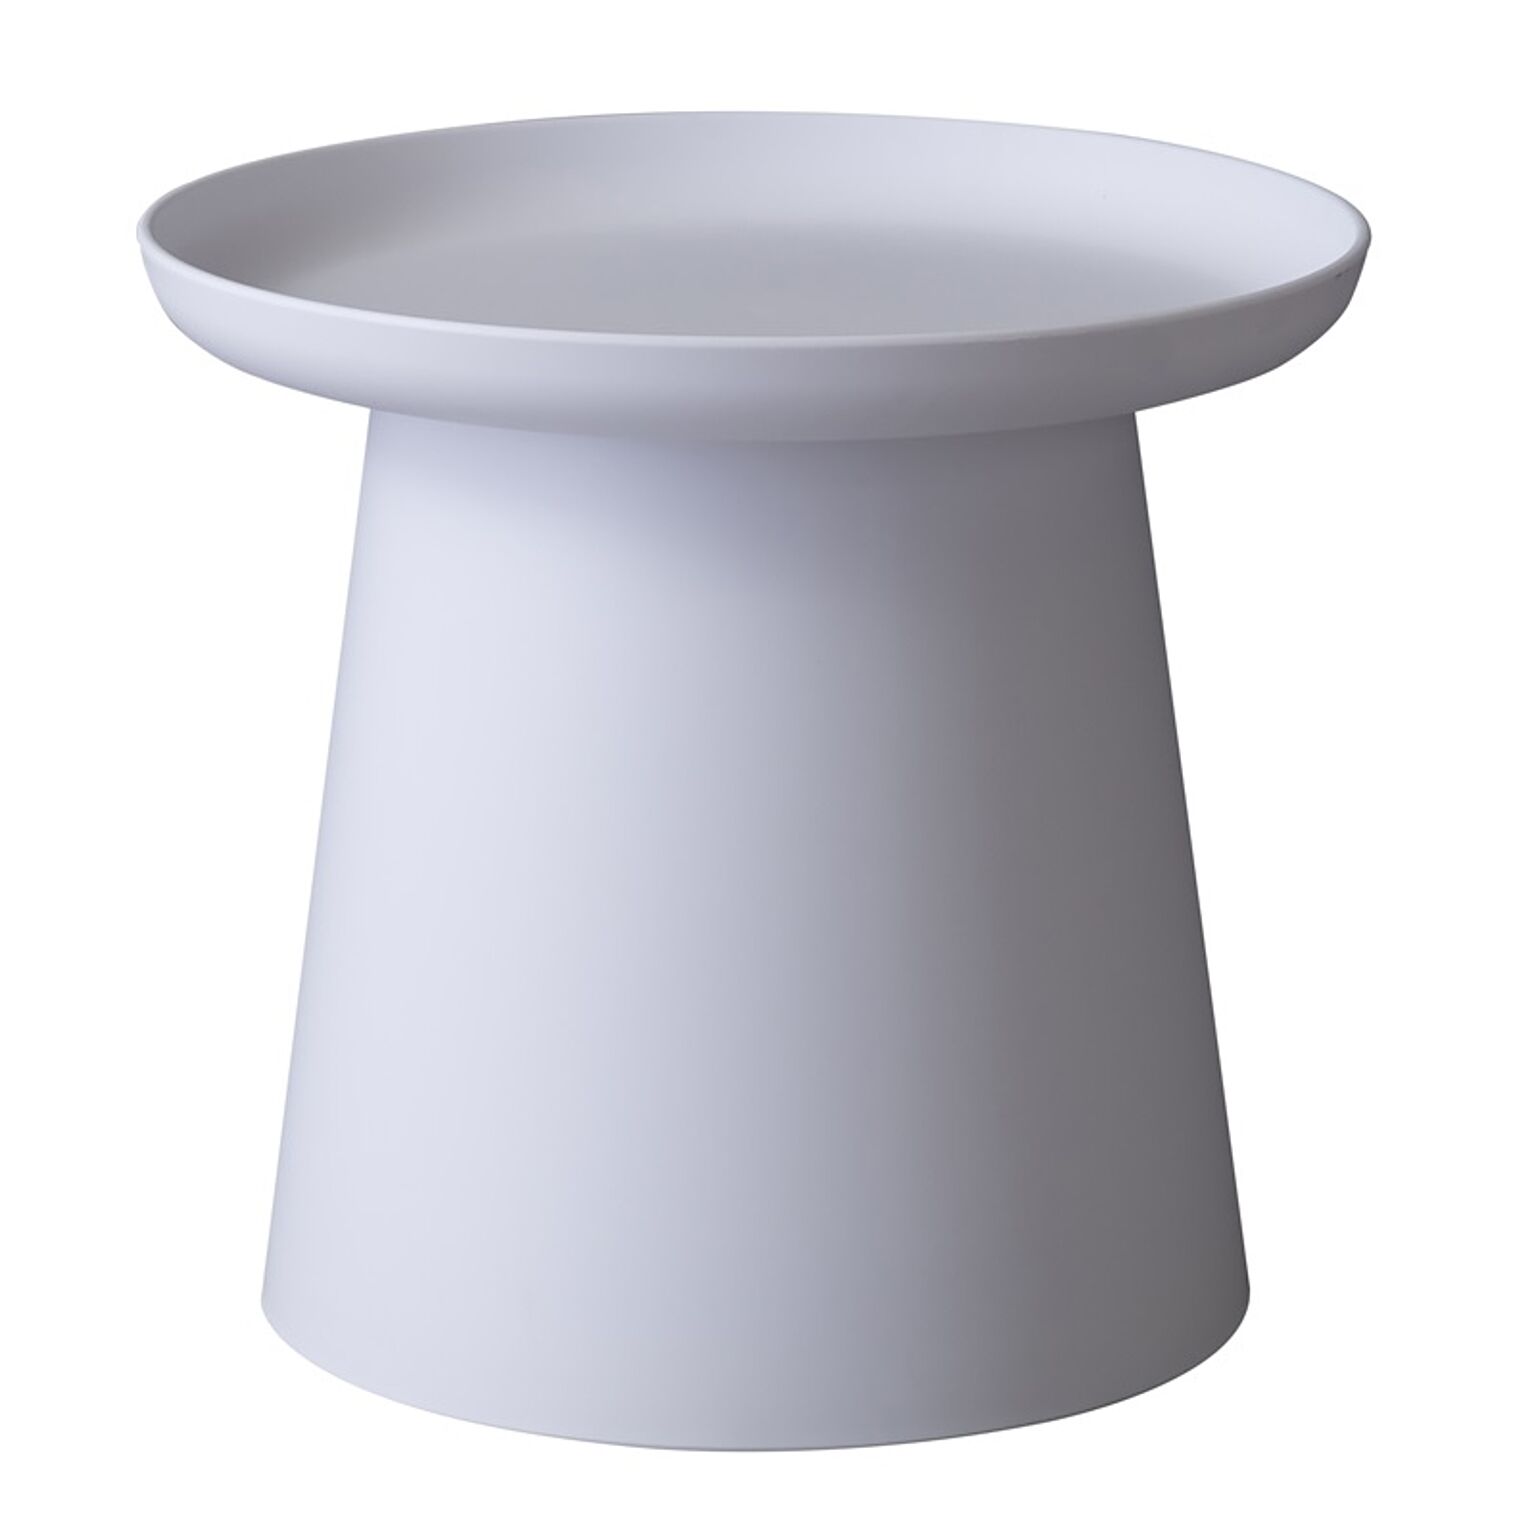 ラウンドテーブルS φ50×H45.5 ホワイト テーブル サイドテーブル リビングテーブル カフェテーブル ラウンドテーブル 丸テーブル トレーテーブル 小さい 丸型 トレー 省スペース シンプル 